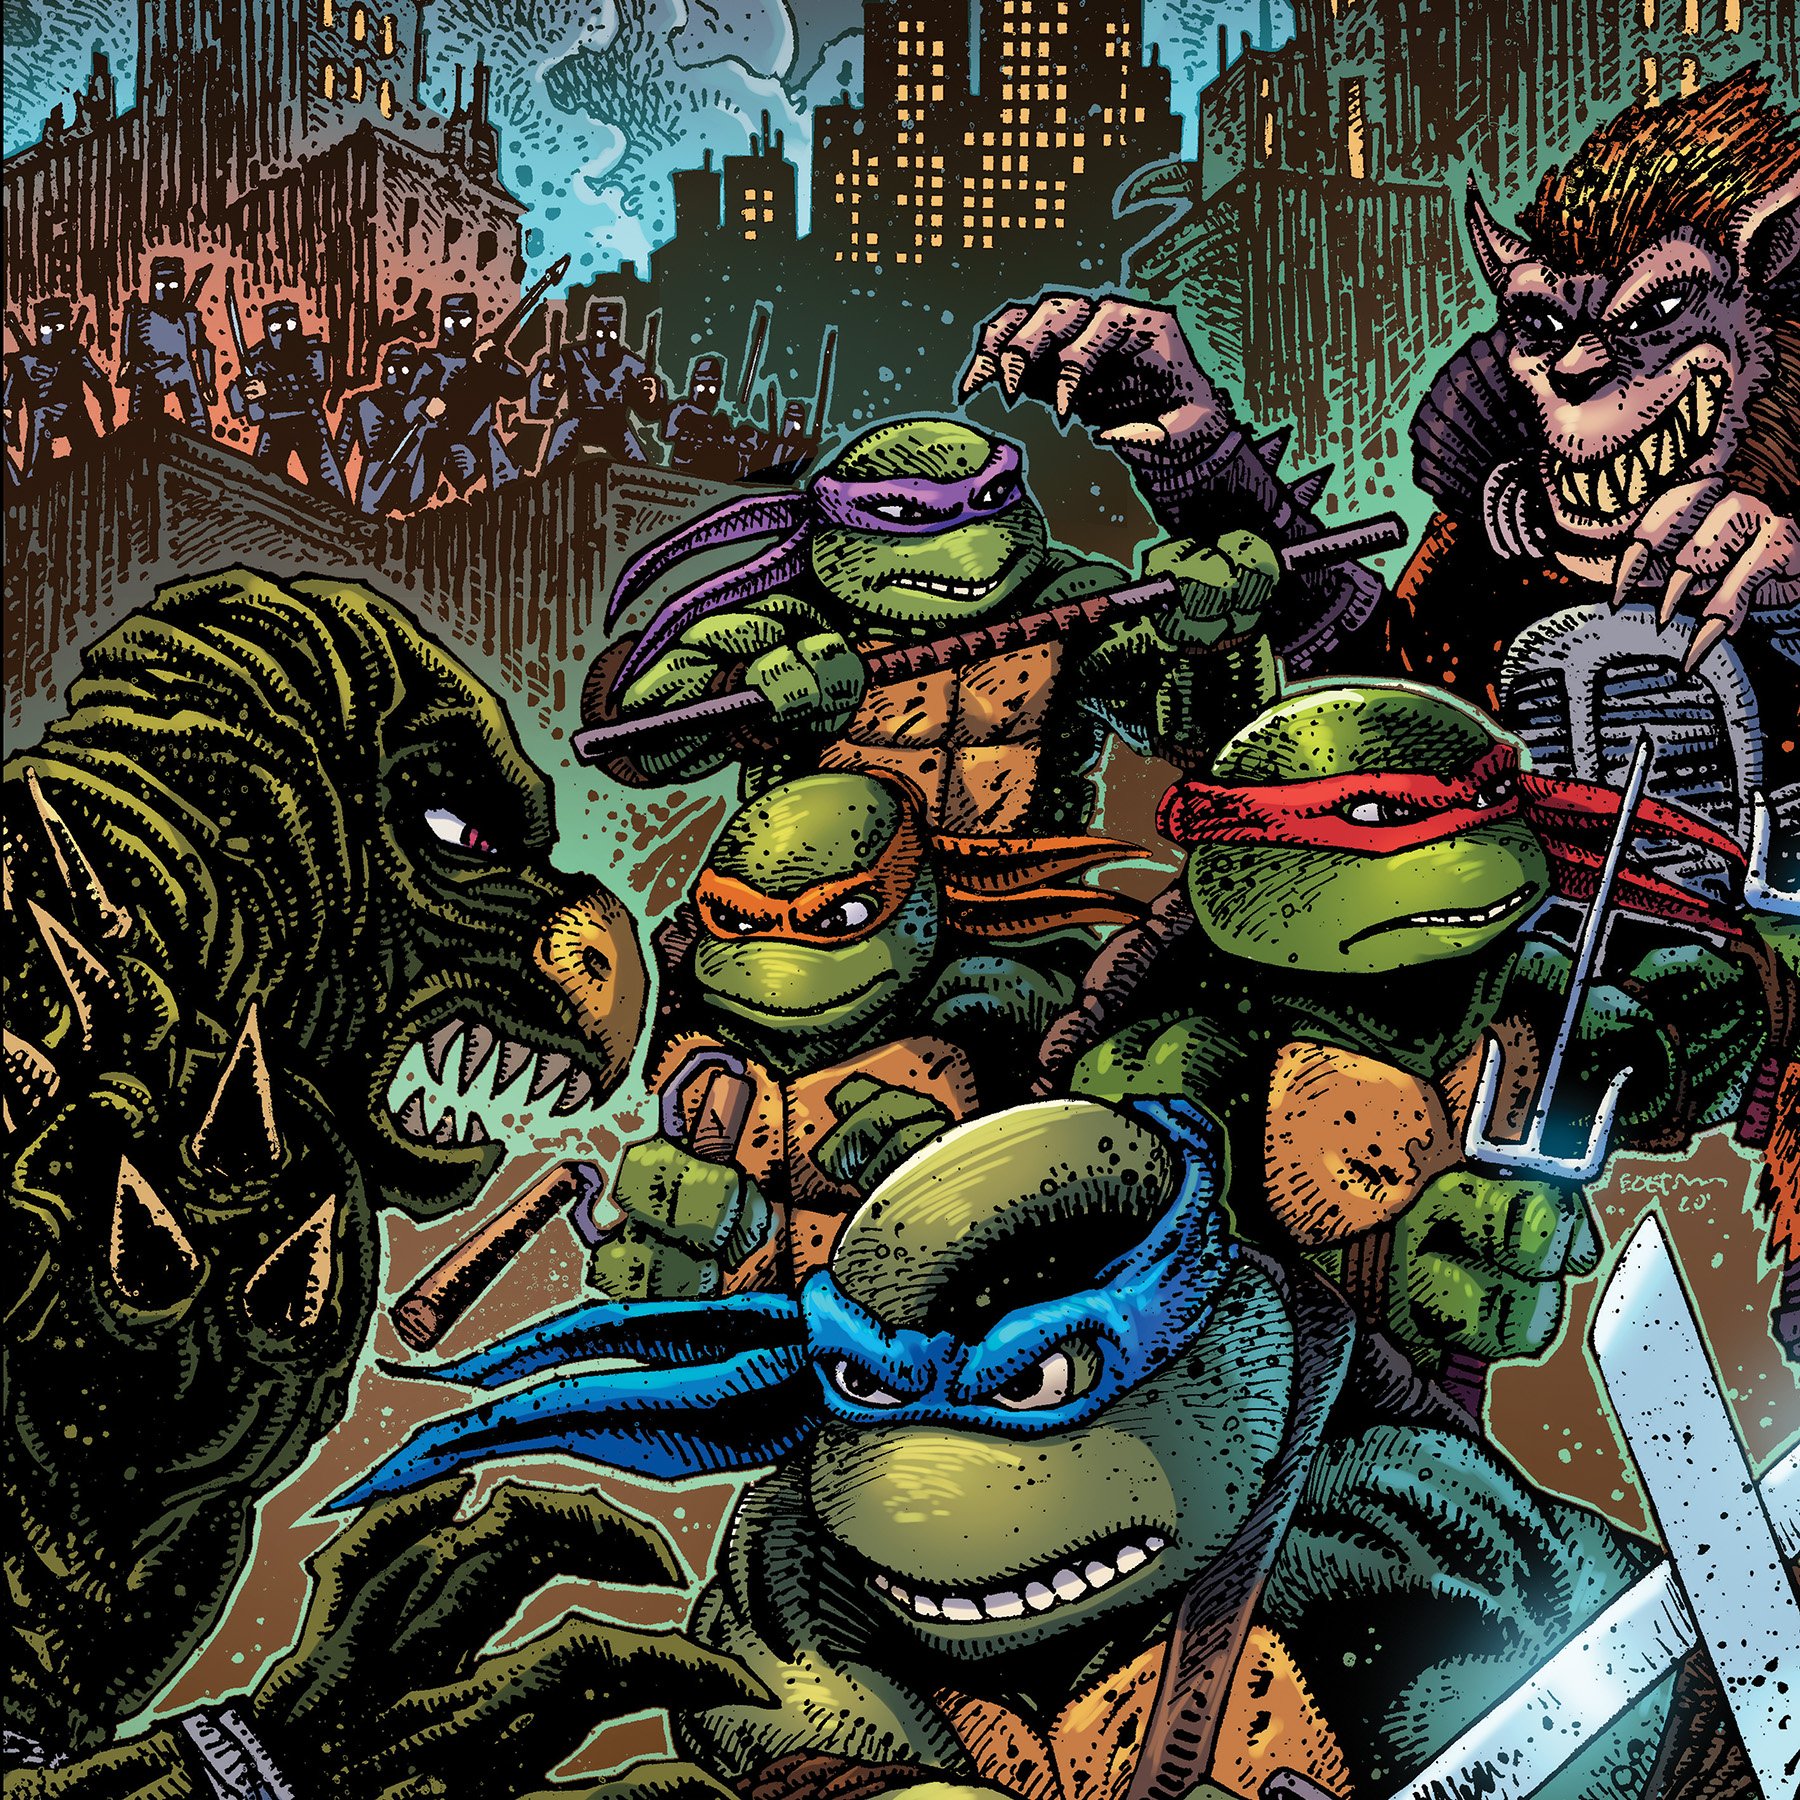 Teenage Mutant Ninja Turtles Part II: The Secret of the Ooze (Vinyl + Cd + Digital)